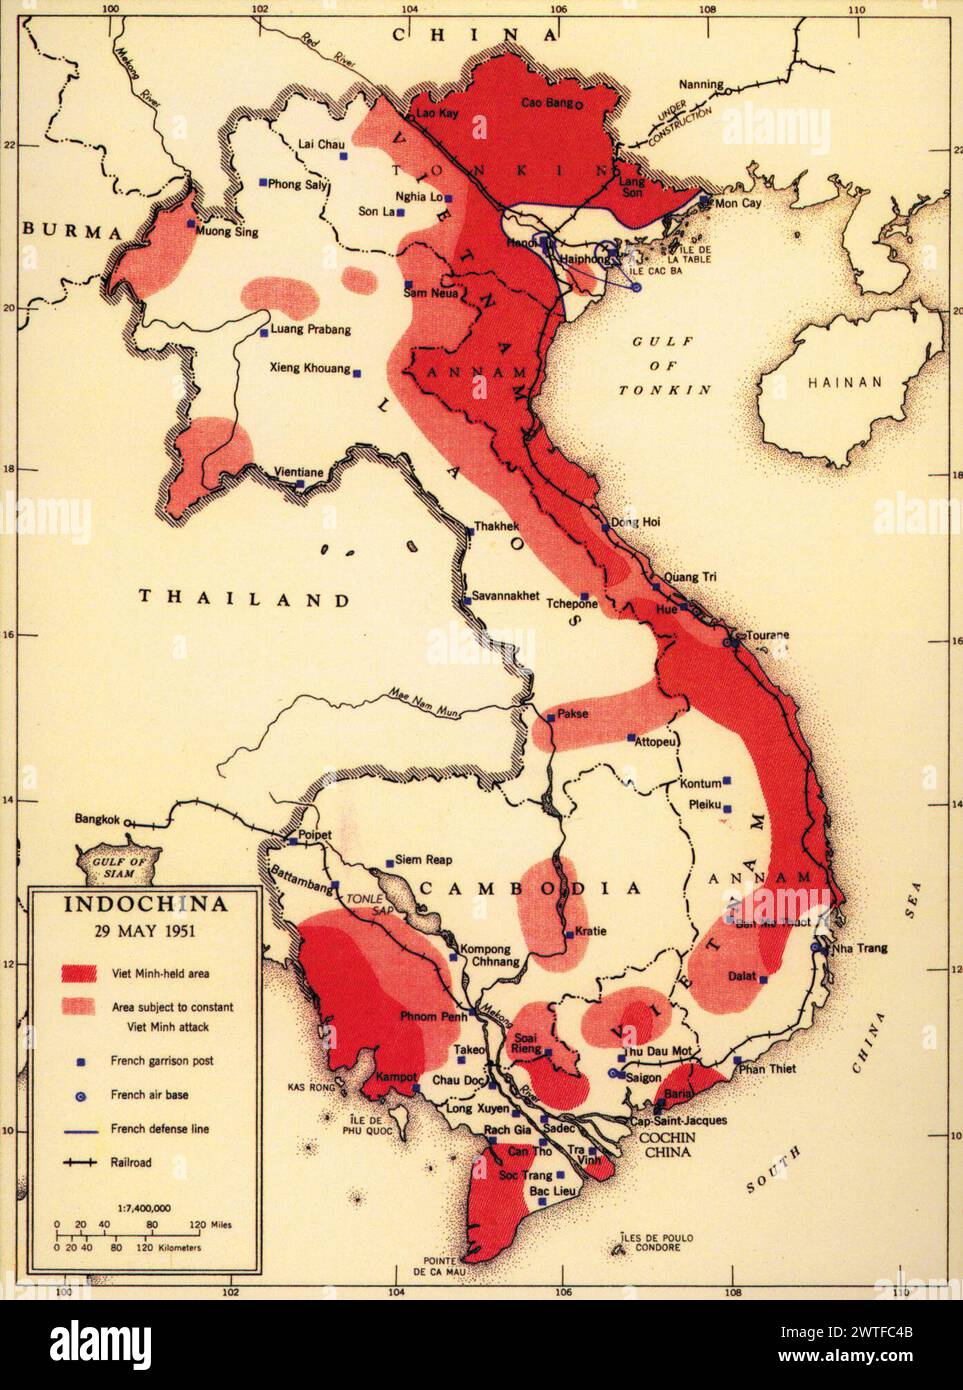 Mapa vintage de la CIA de Indochina, territorios coloniales franceses en el sudeste asiático, 1951. Foto de stock